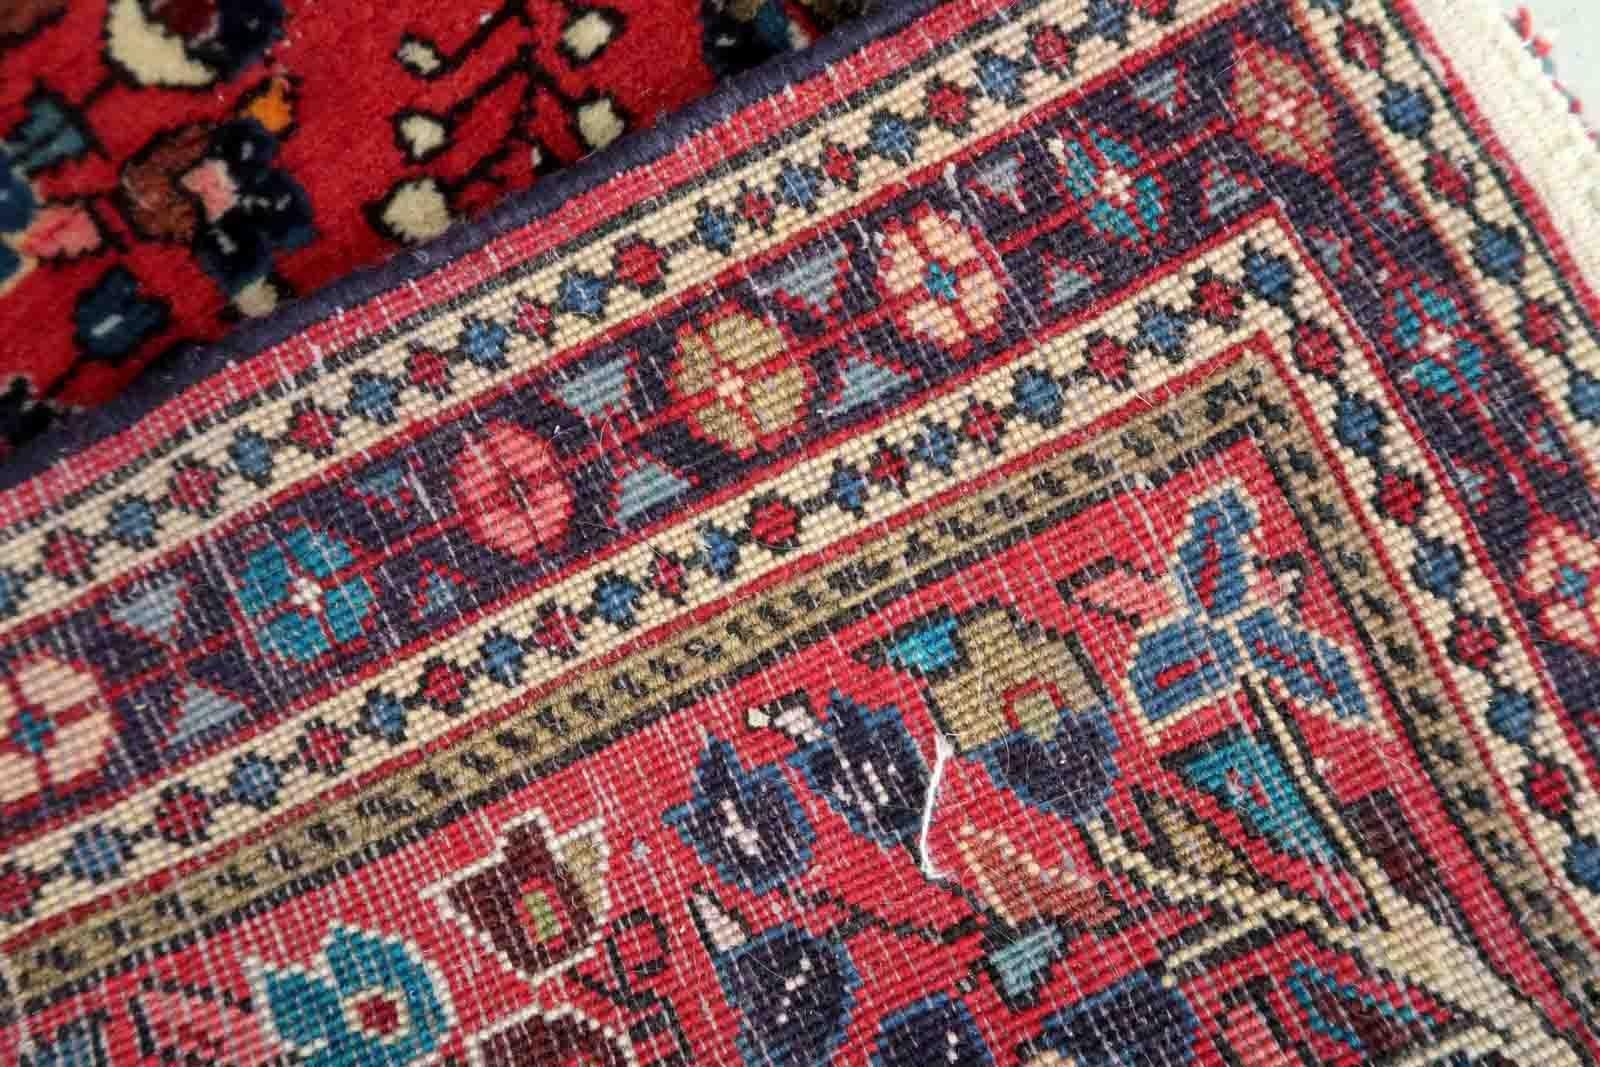 Handgefertigter Sarouk-Teppich in traditionellem Design. Der Teppich ist in roter Farbe. Der Teppich stammt aus dem Ende des 20. Jahrhunderts und ist in gutem Originalzustand.

-Zustand: original gut,

-Umgebung: 1970er Jahre,

-Größe: 2,1' x 4,2'